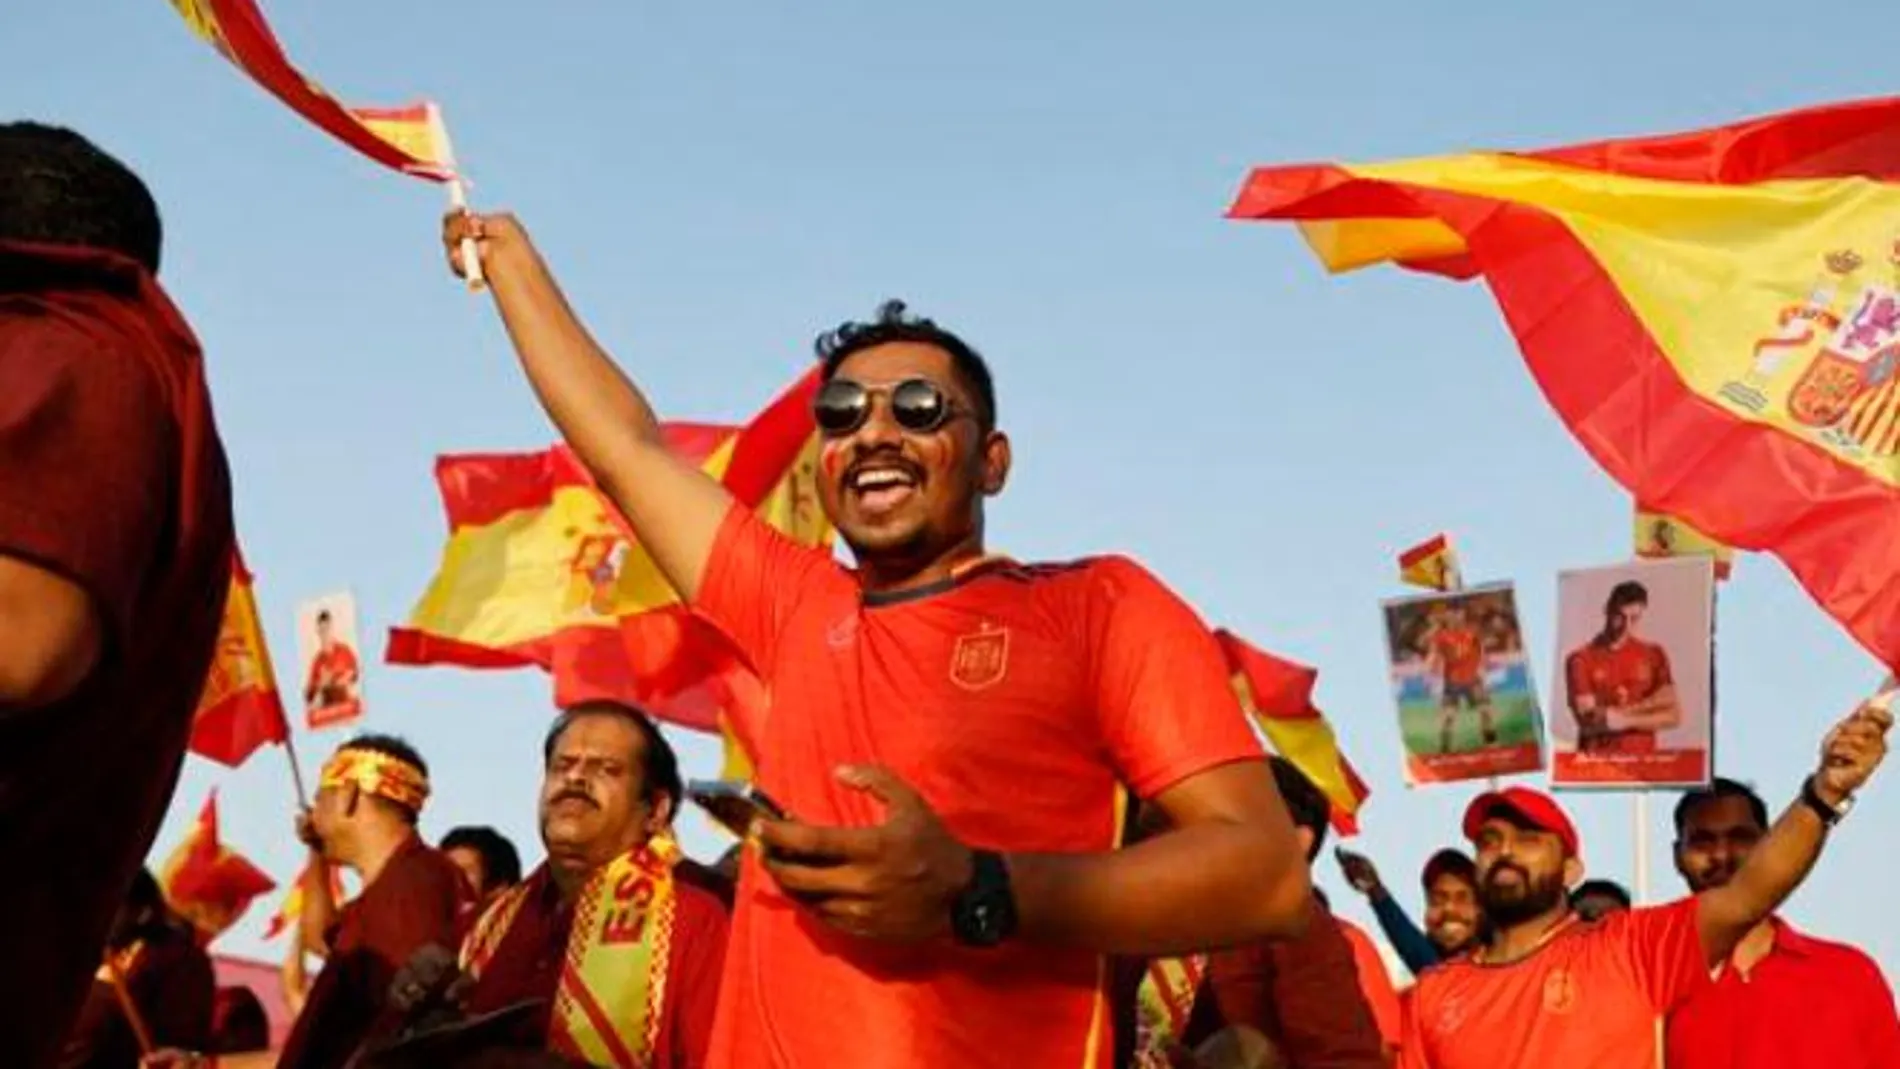 Hinchas "españoles" en Qatar antes de comenzar el Mundial